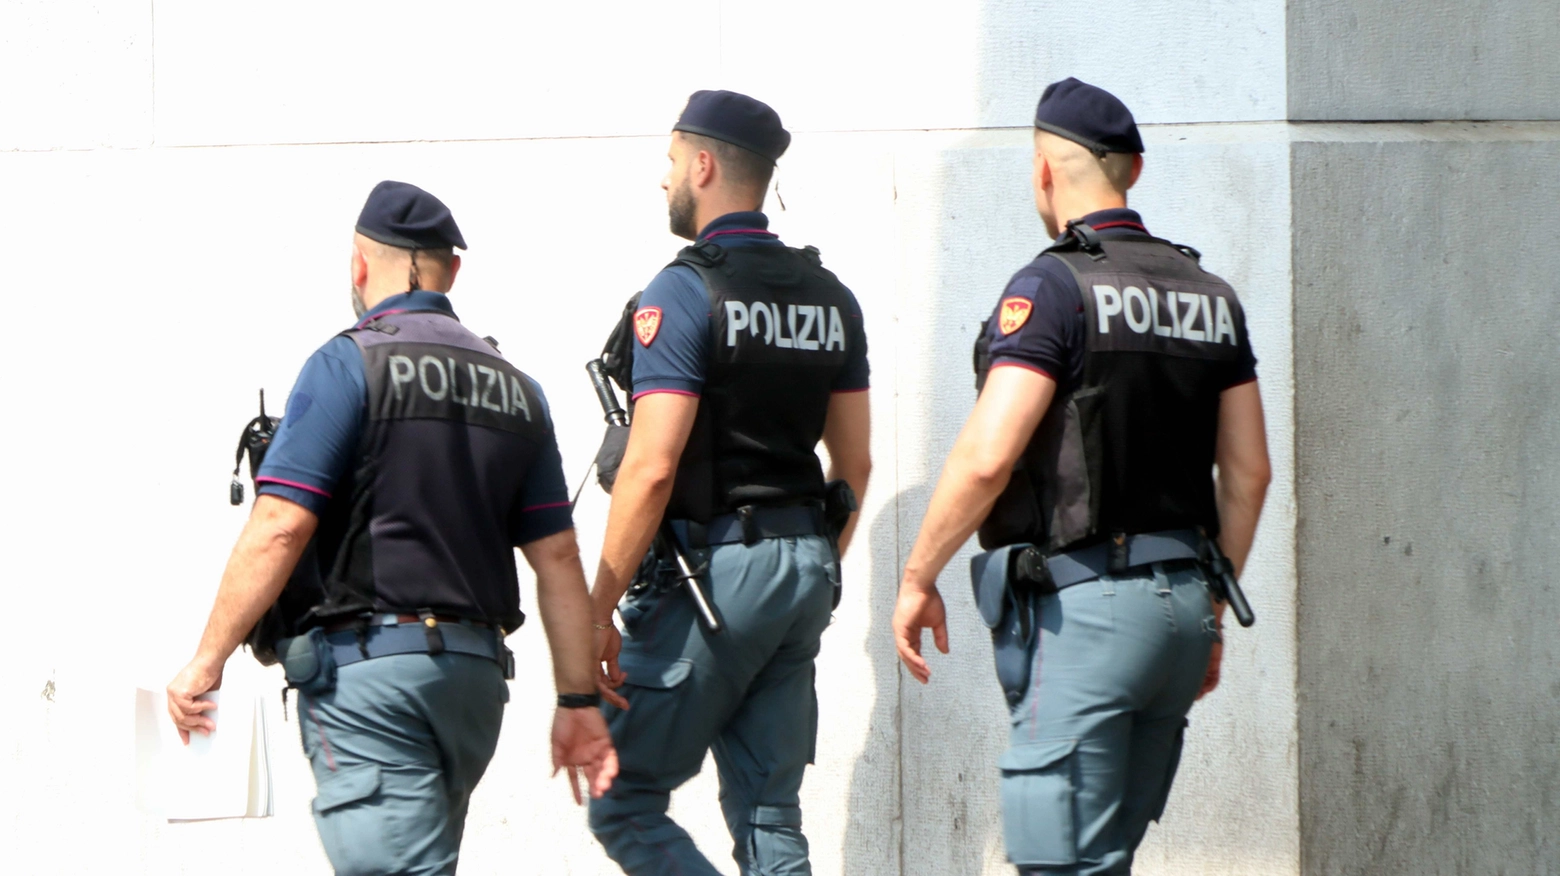 La Polizia è intervenuta in un albergo di corso XXII Marzo a Milano